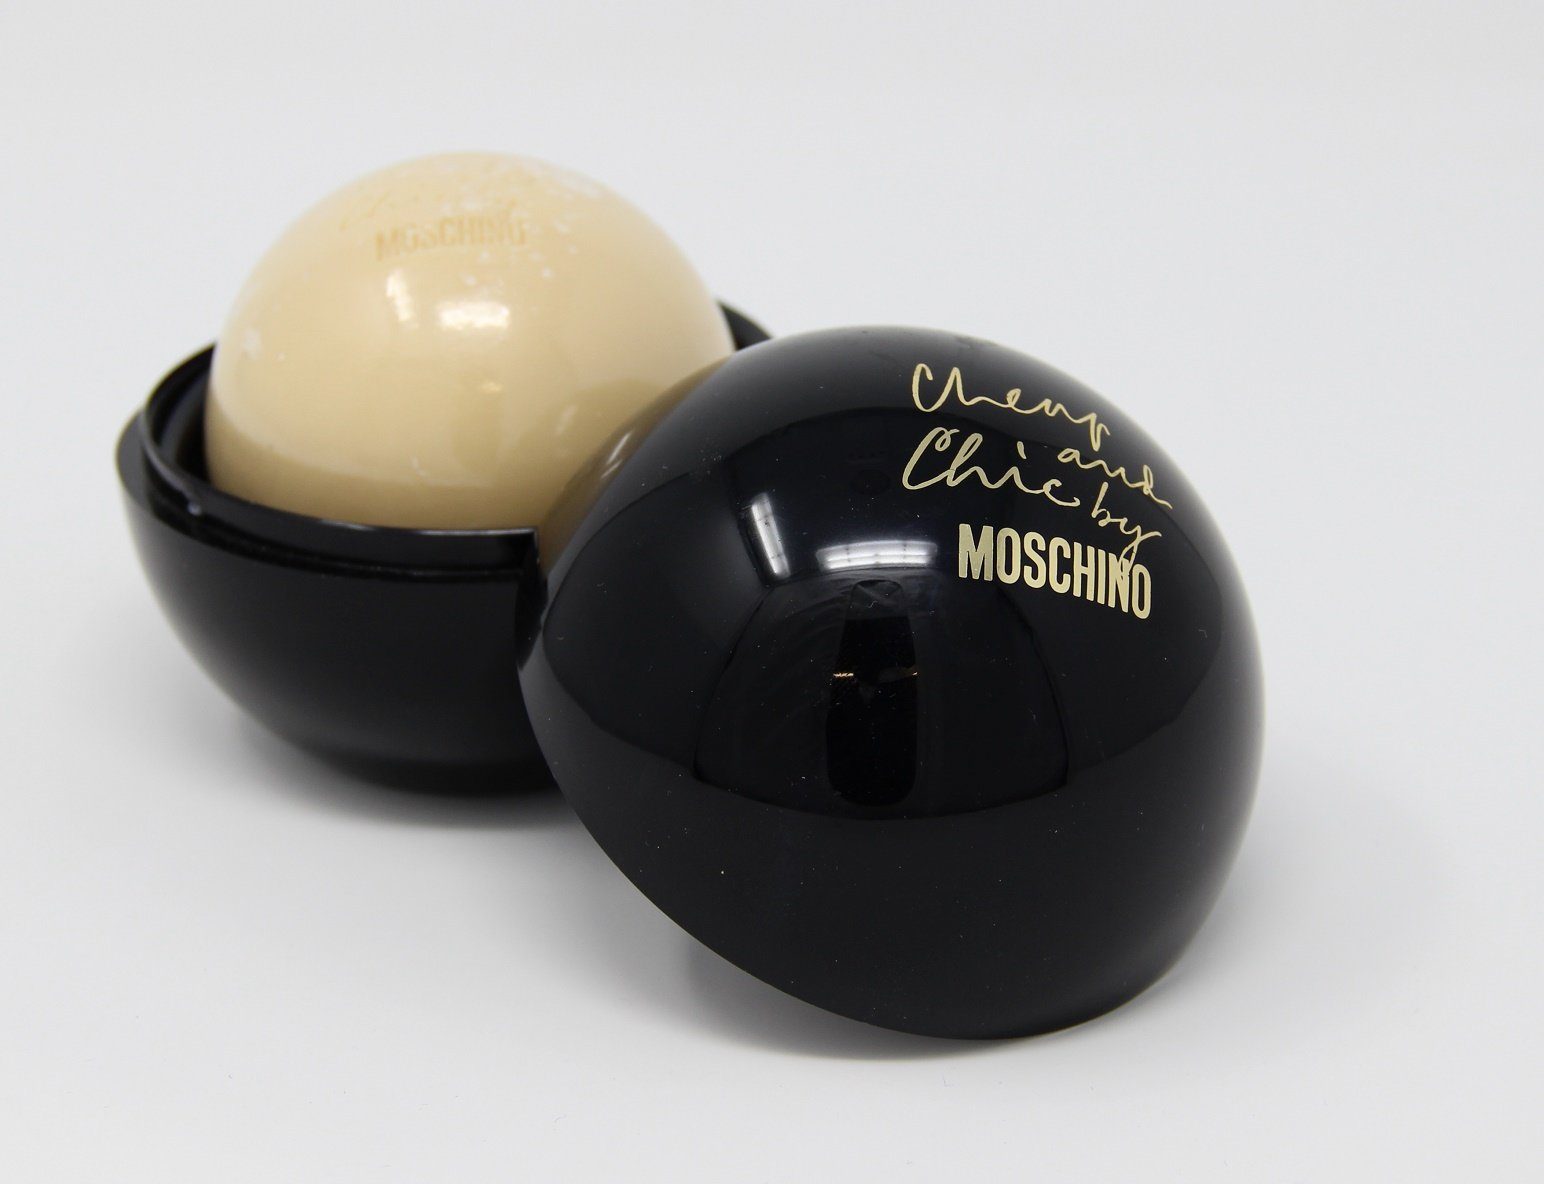 Cheap Perfumed Seife Moschino 100g Handseife and Chic Moschino